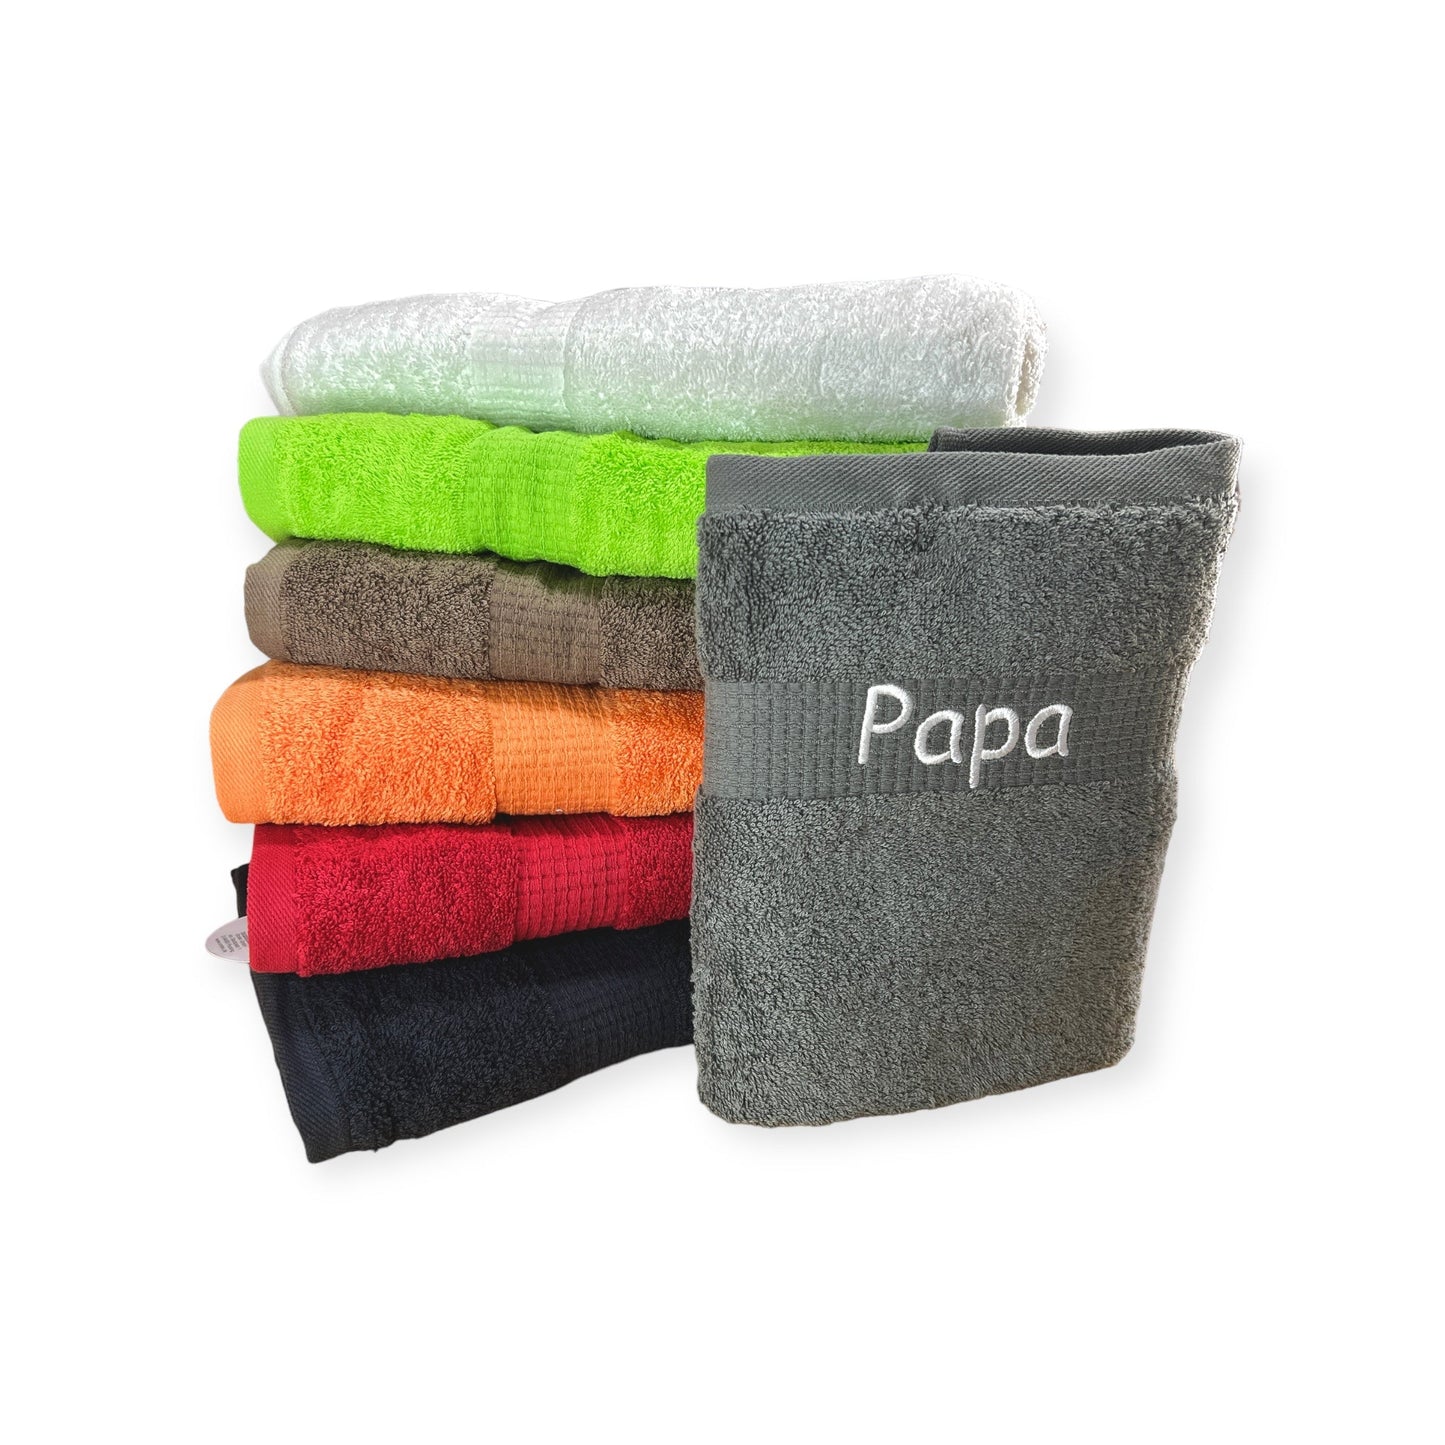 Handtuch mit Namen auf Bordüre bestickt baden abtrocknen Sauna personalisiert